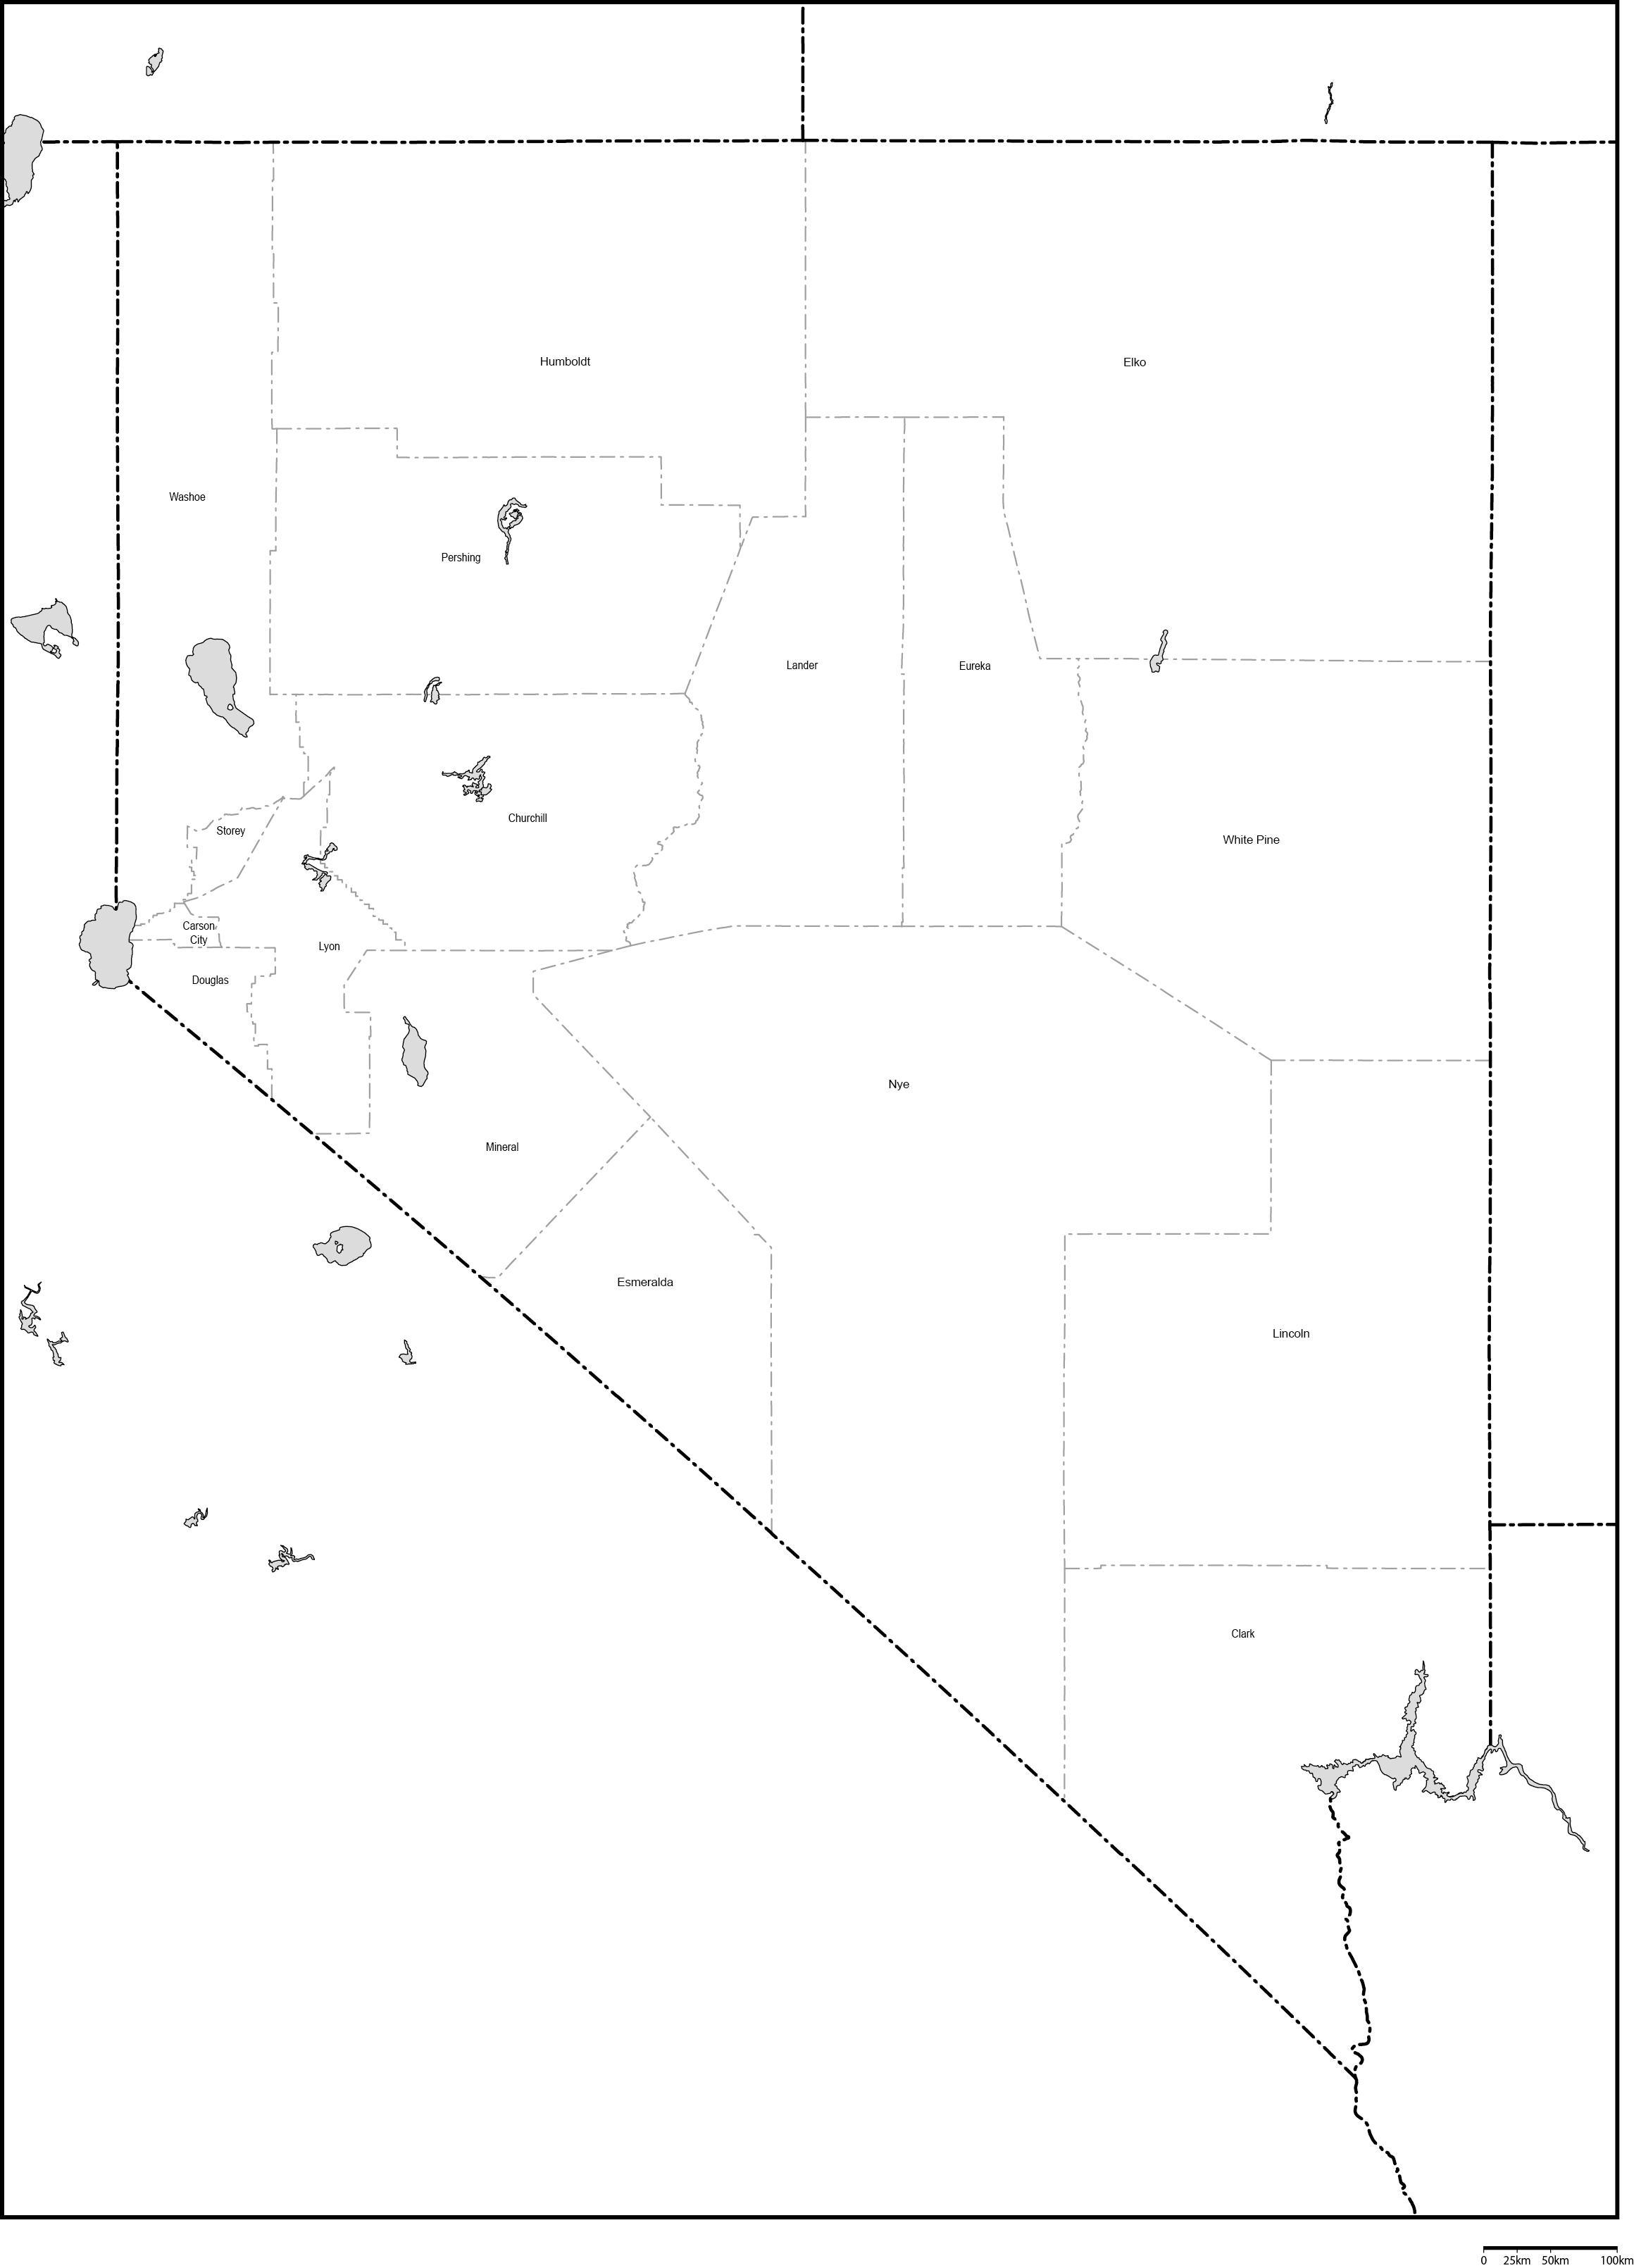 ネバダ州郡分け白地図郡名あり(英語)フリーデータの画像